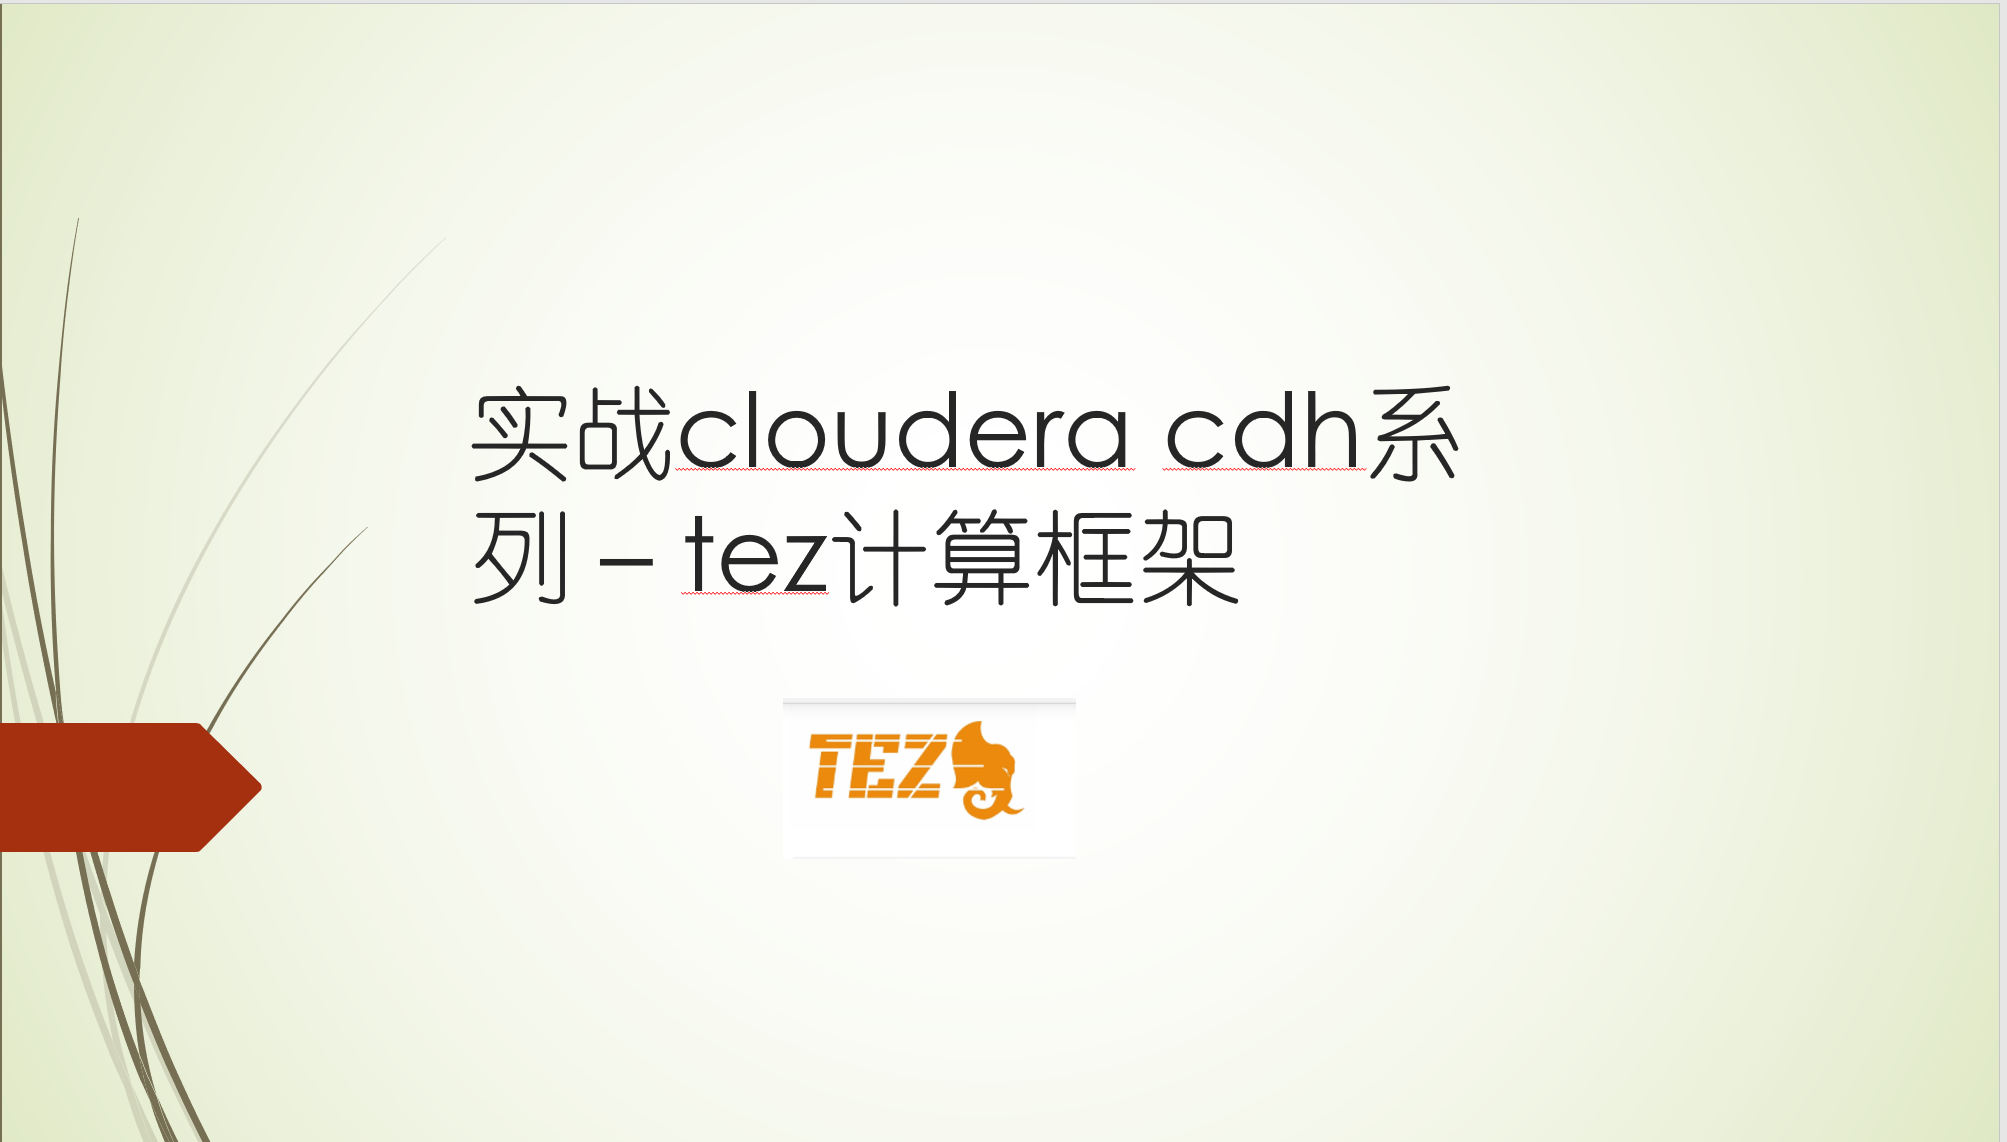 实战cloudera cdh系列 - tez计算框架